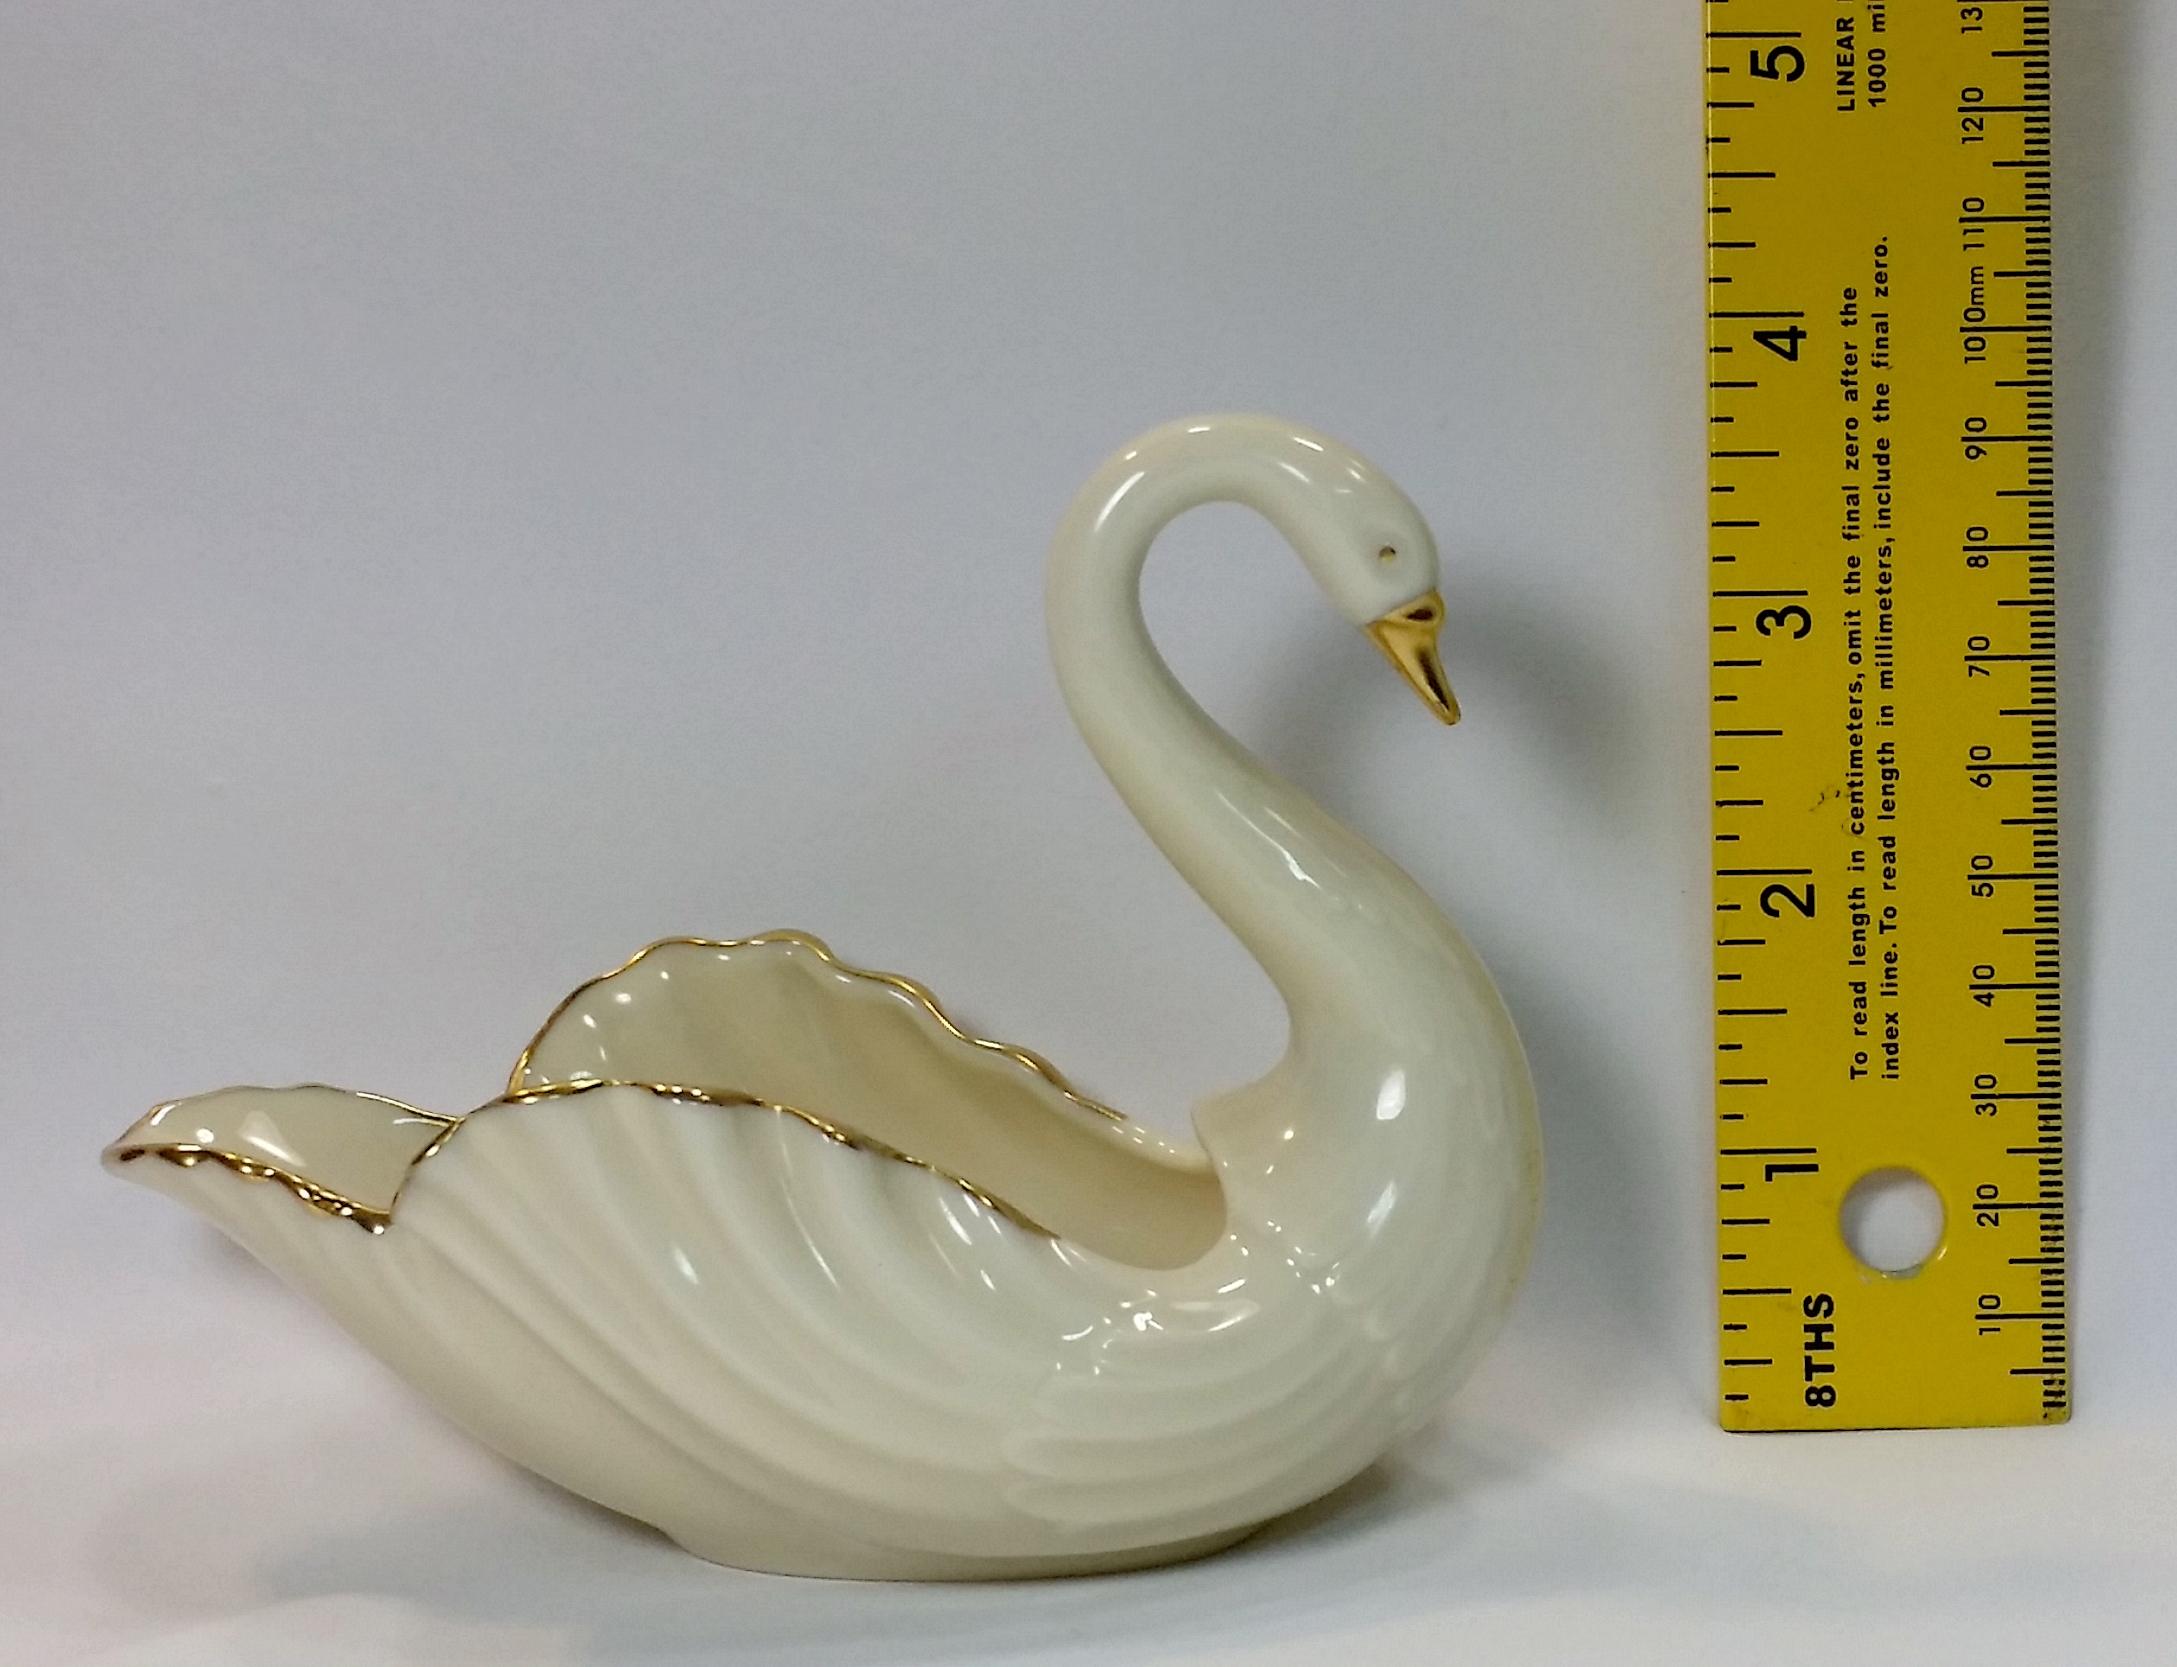 LENOX China "Swan" Sugar Bowl